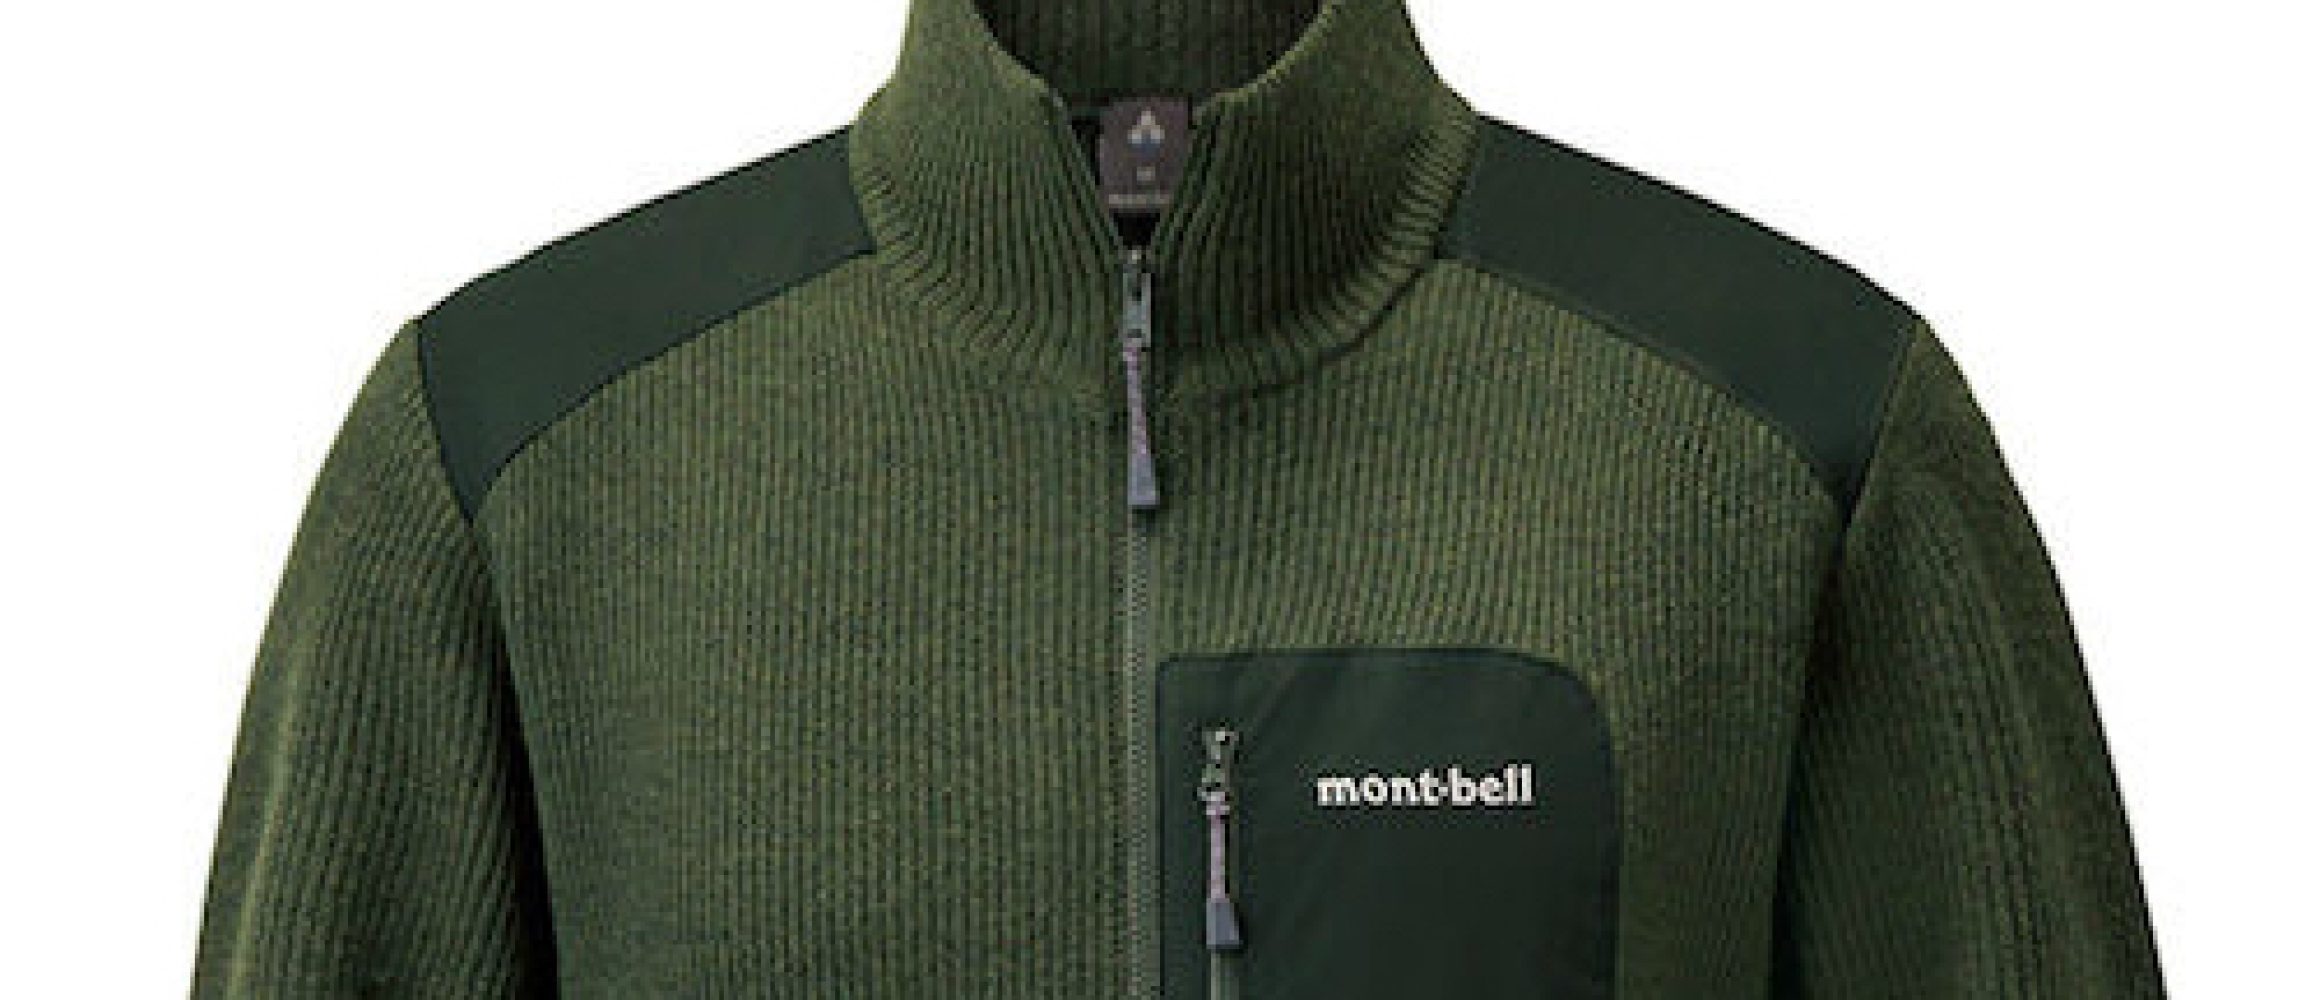 montbell ミッテルレギ フルジップ セーター ニット モンベル - ニット